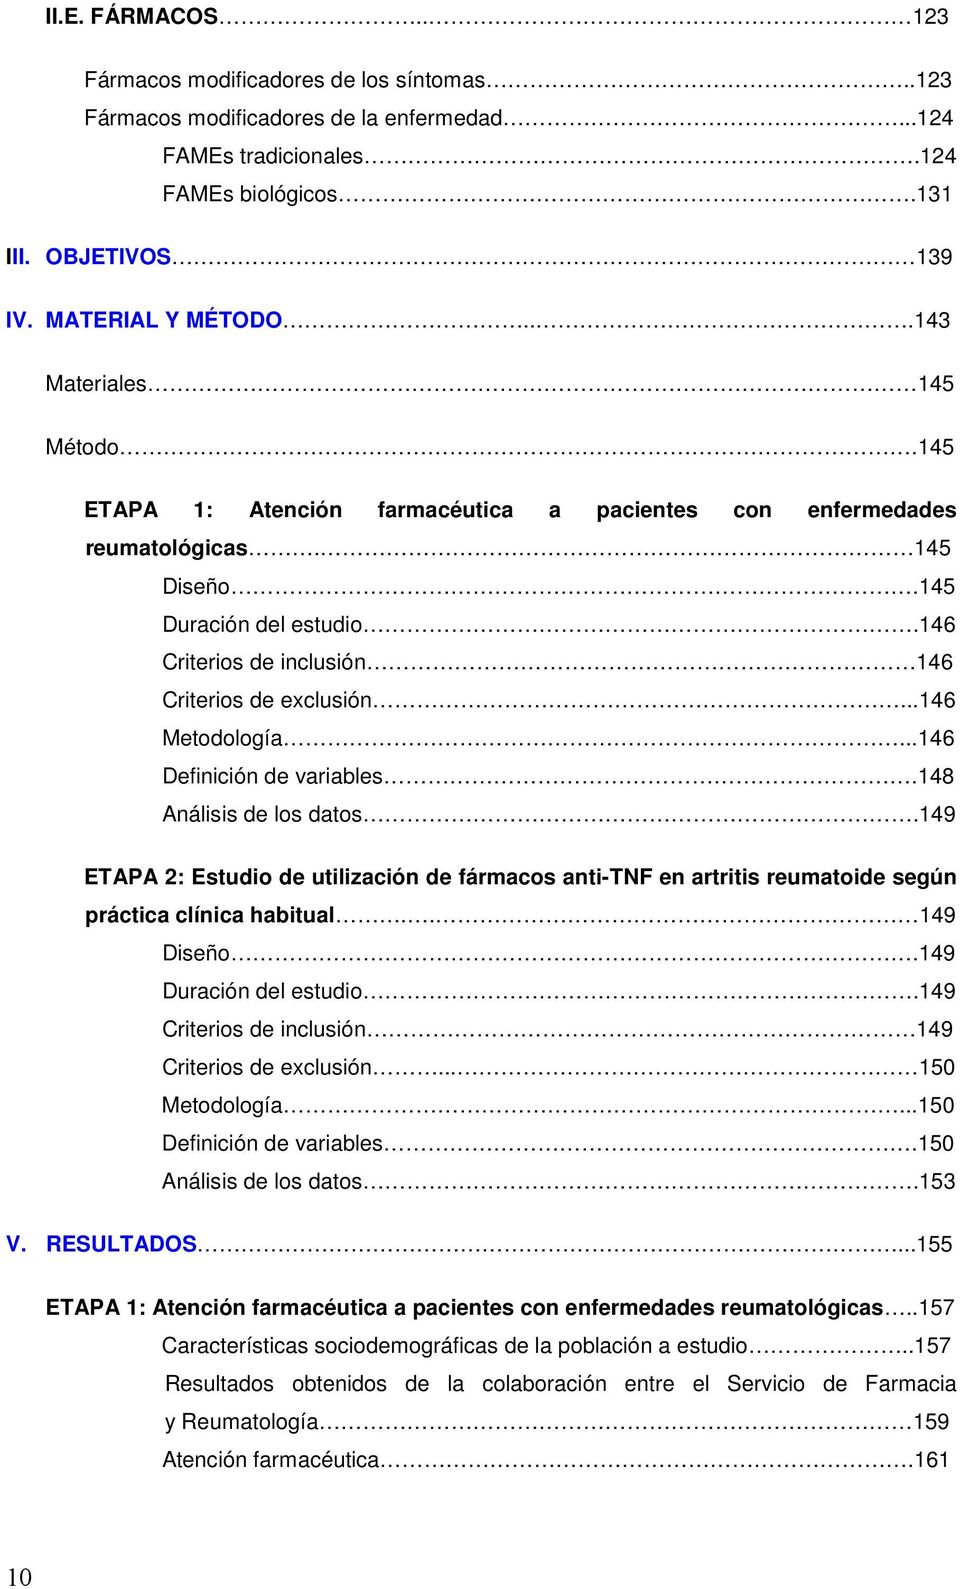 ..146 Metodología...146 Definición de variables.148 Análisis de los datos.149 ETAPA 2: Estudio de utilización de fármacos anti-tnf en artritis reumatoide según práctica clínica habitual.. 149 Diseño.